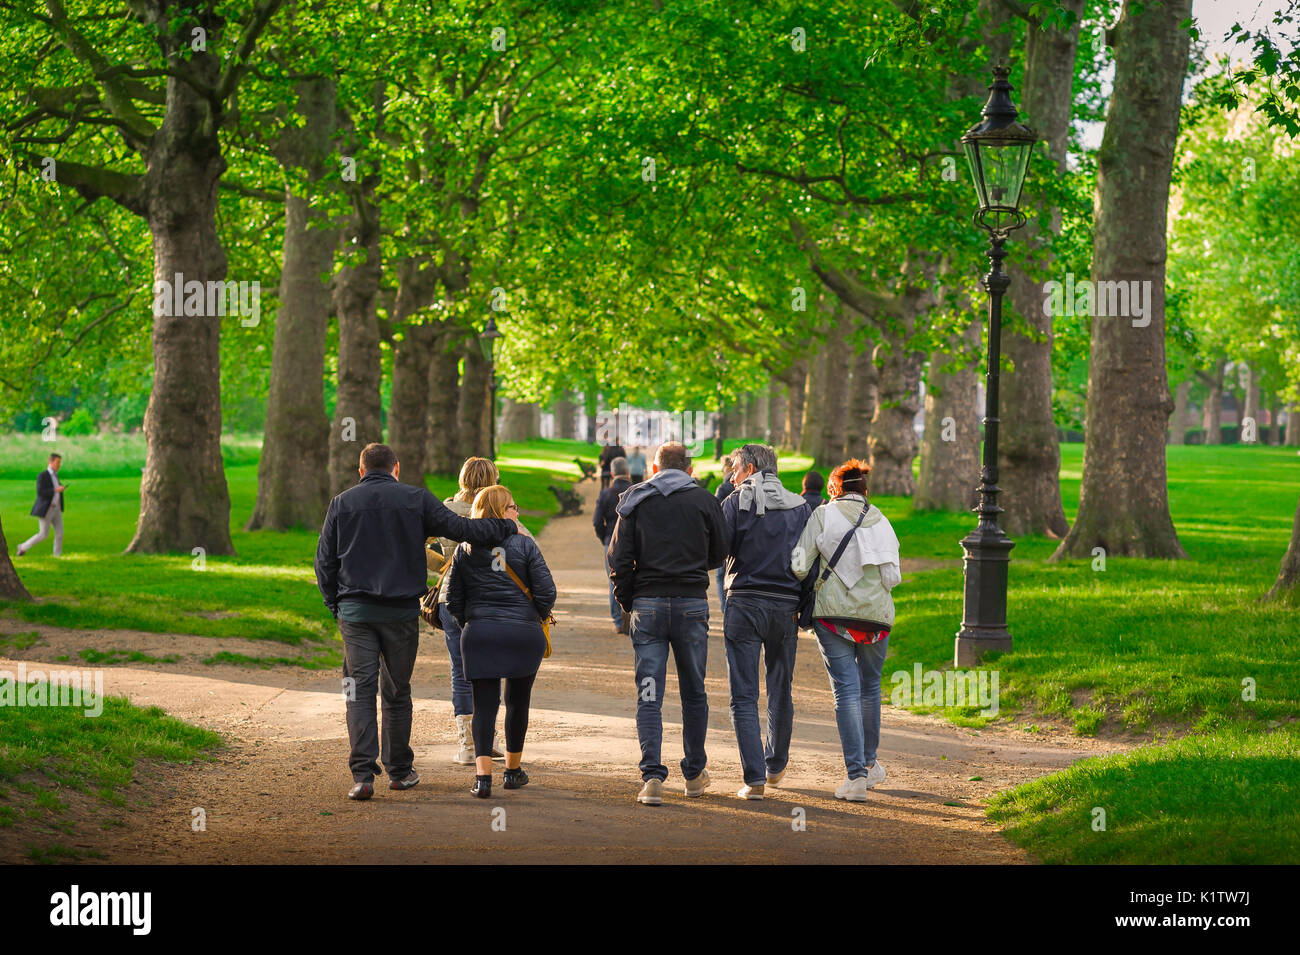 Amici insieme a piedi, vista di un gruppo di amici di mezza età che passeggiano per Green Park nel centro di Londra in un pomeriggio estivo, Inghilterra, Regno Unito. Foto Stock